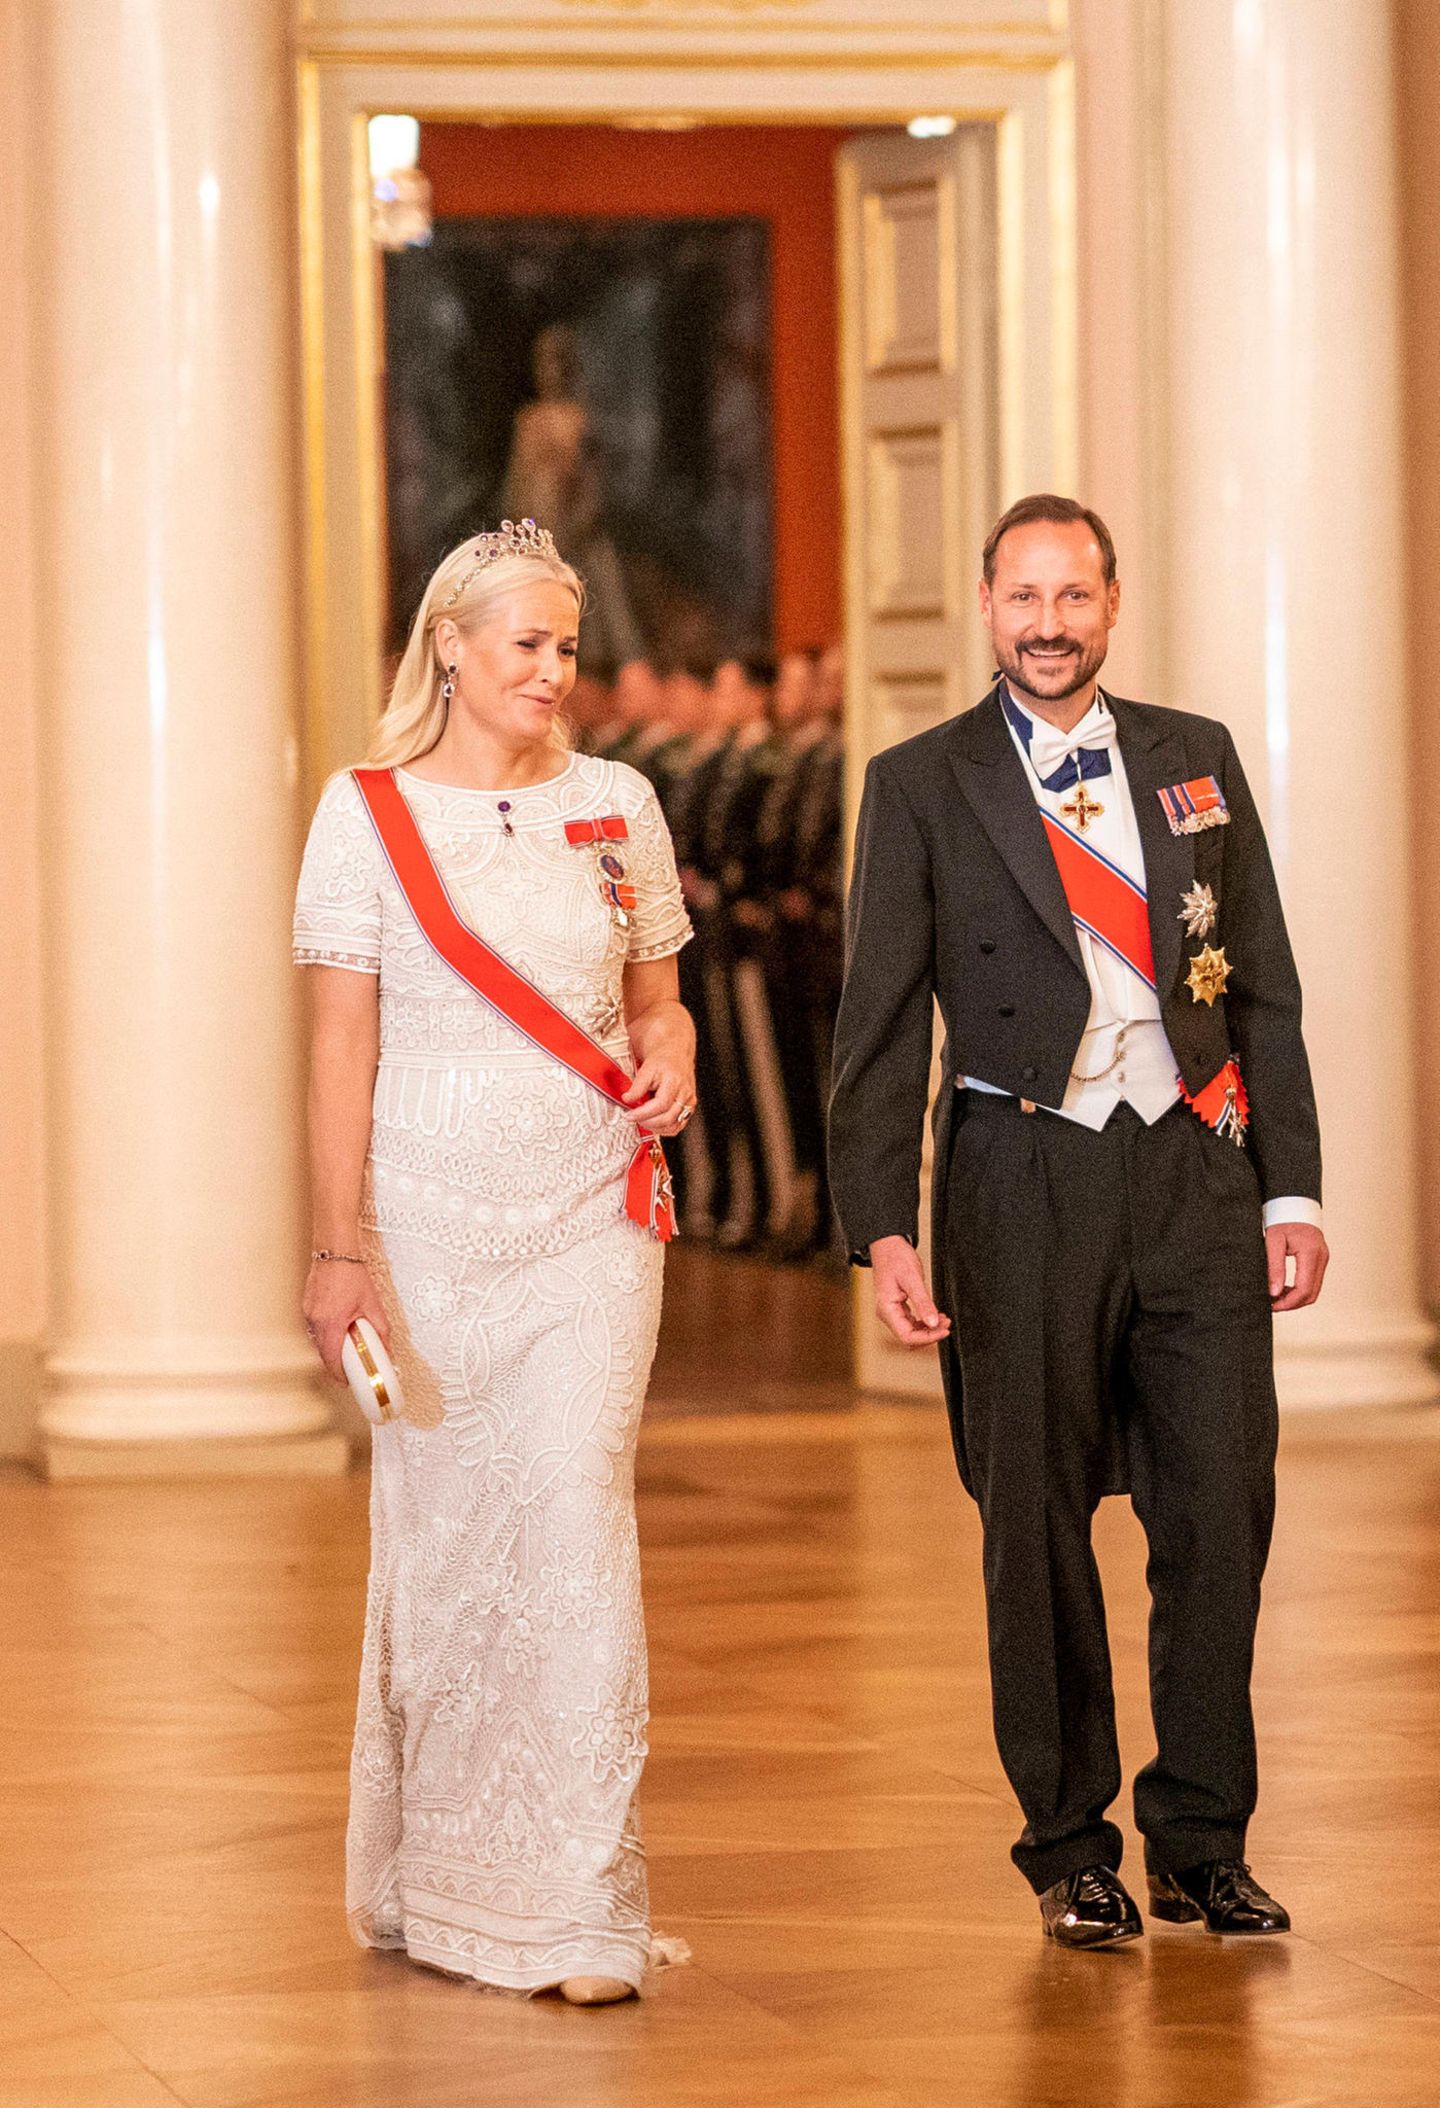 RTK: Prinzessin Mette-Marit und Prinz Haakon beim Dinner in Oslo